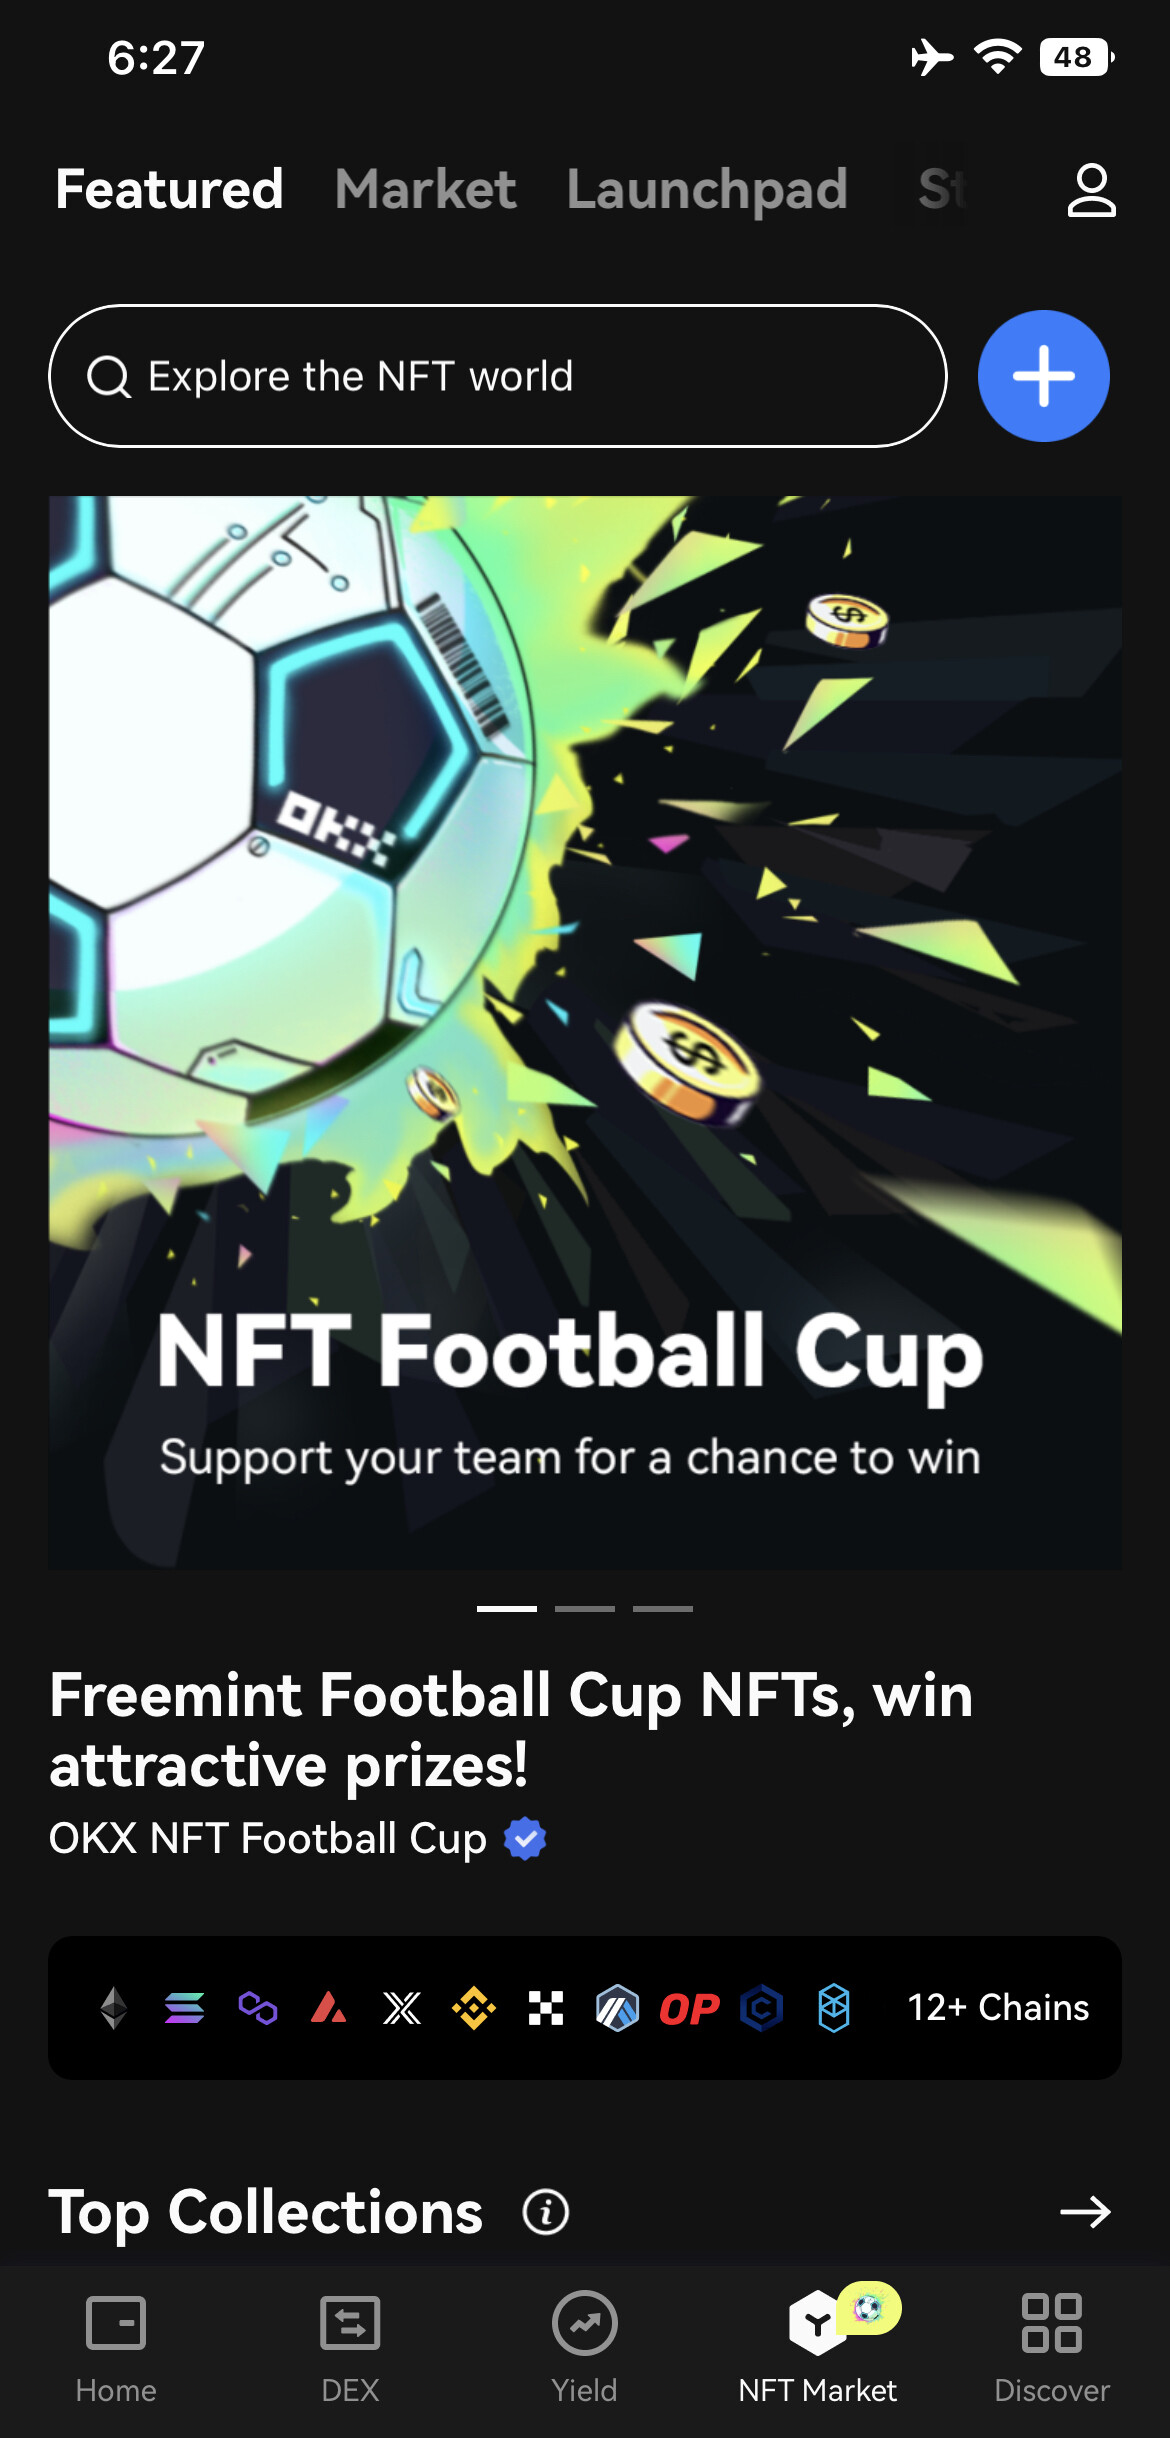 Freemint Footbal Cup NFTs